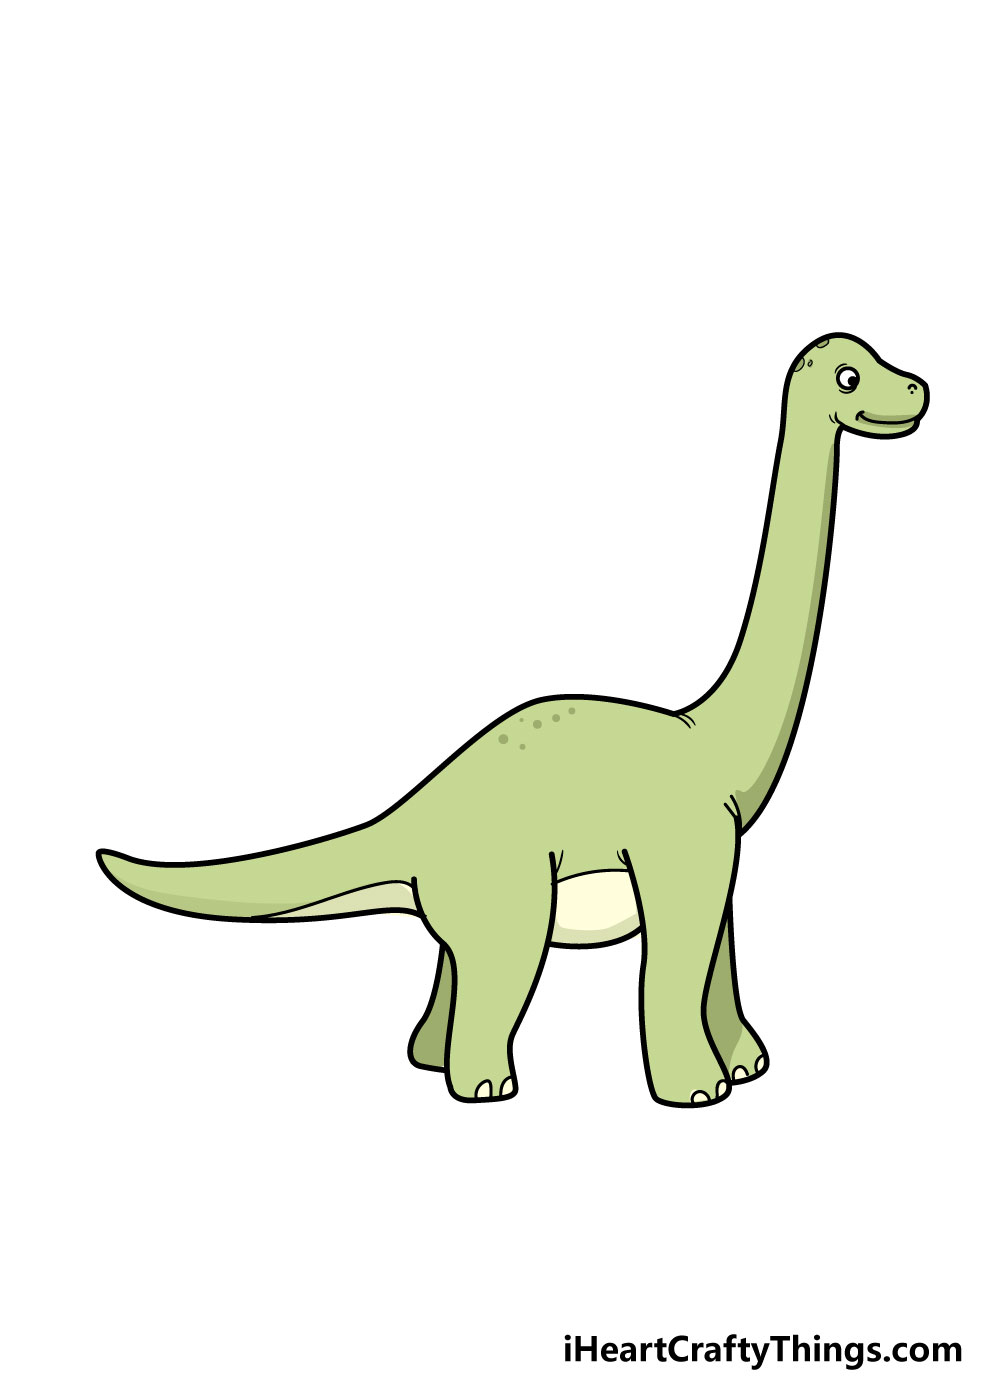 How to draw a dinosaur 8 - Hướng dẫn cách vẽ con khủng long đơn giản với 8 bước cơ bản